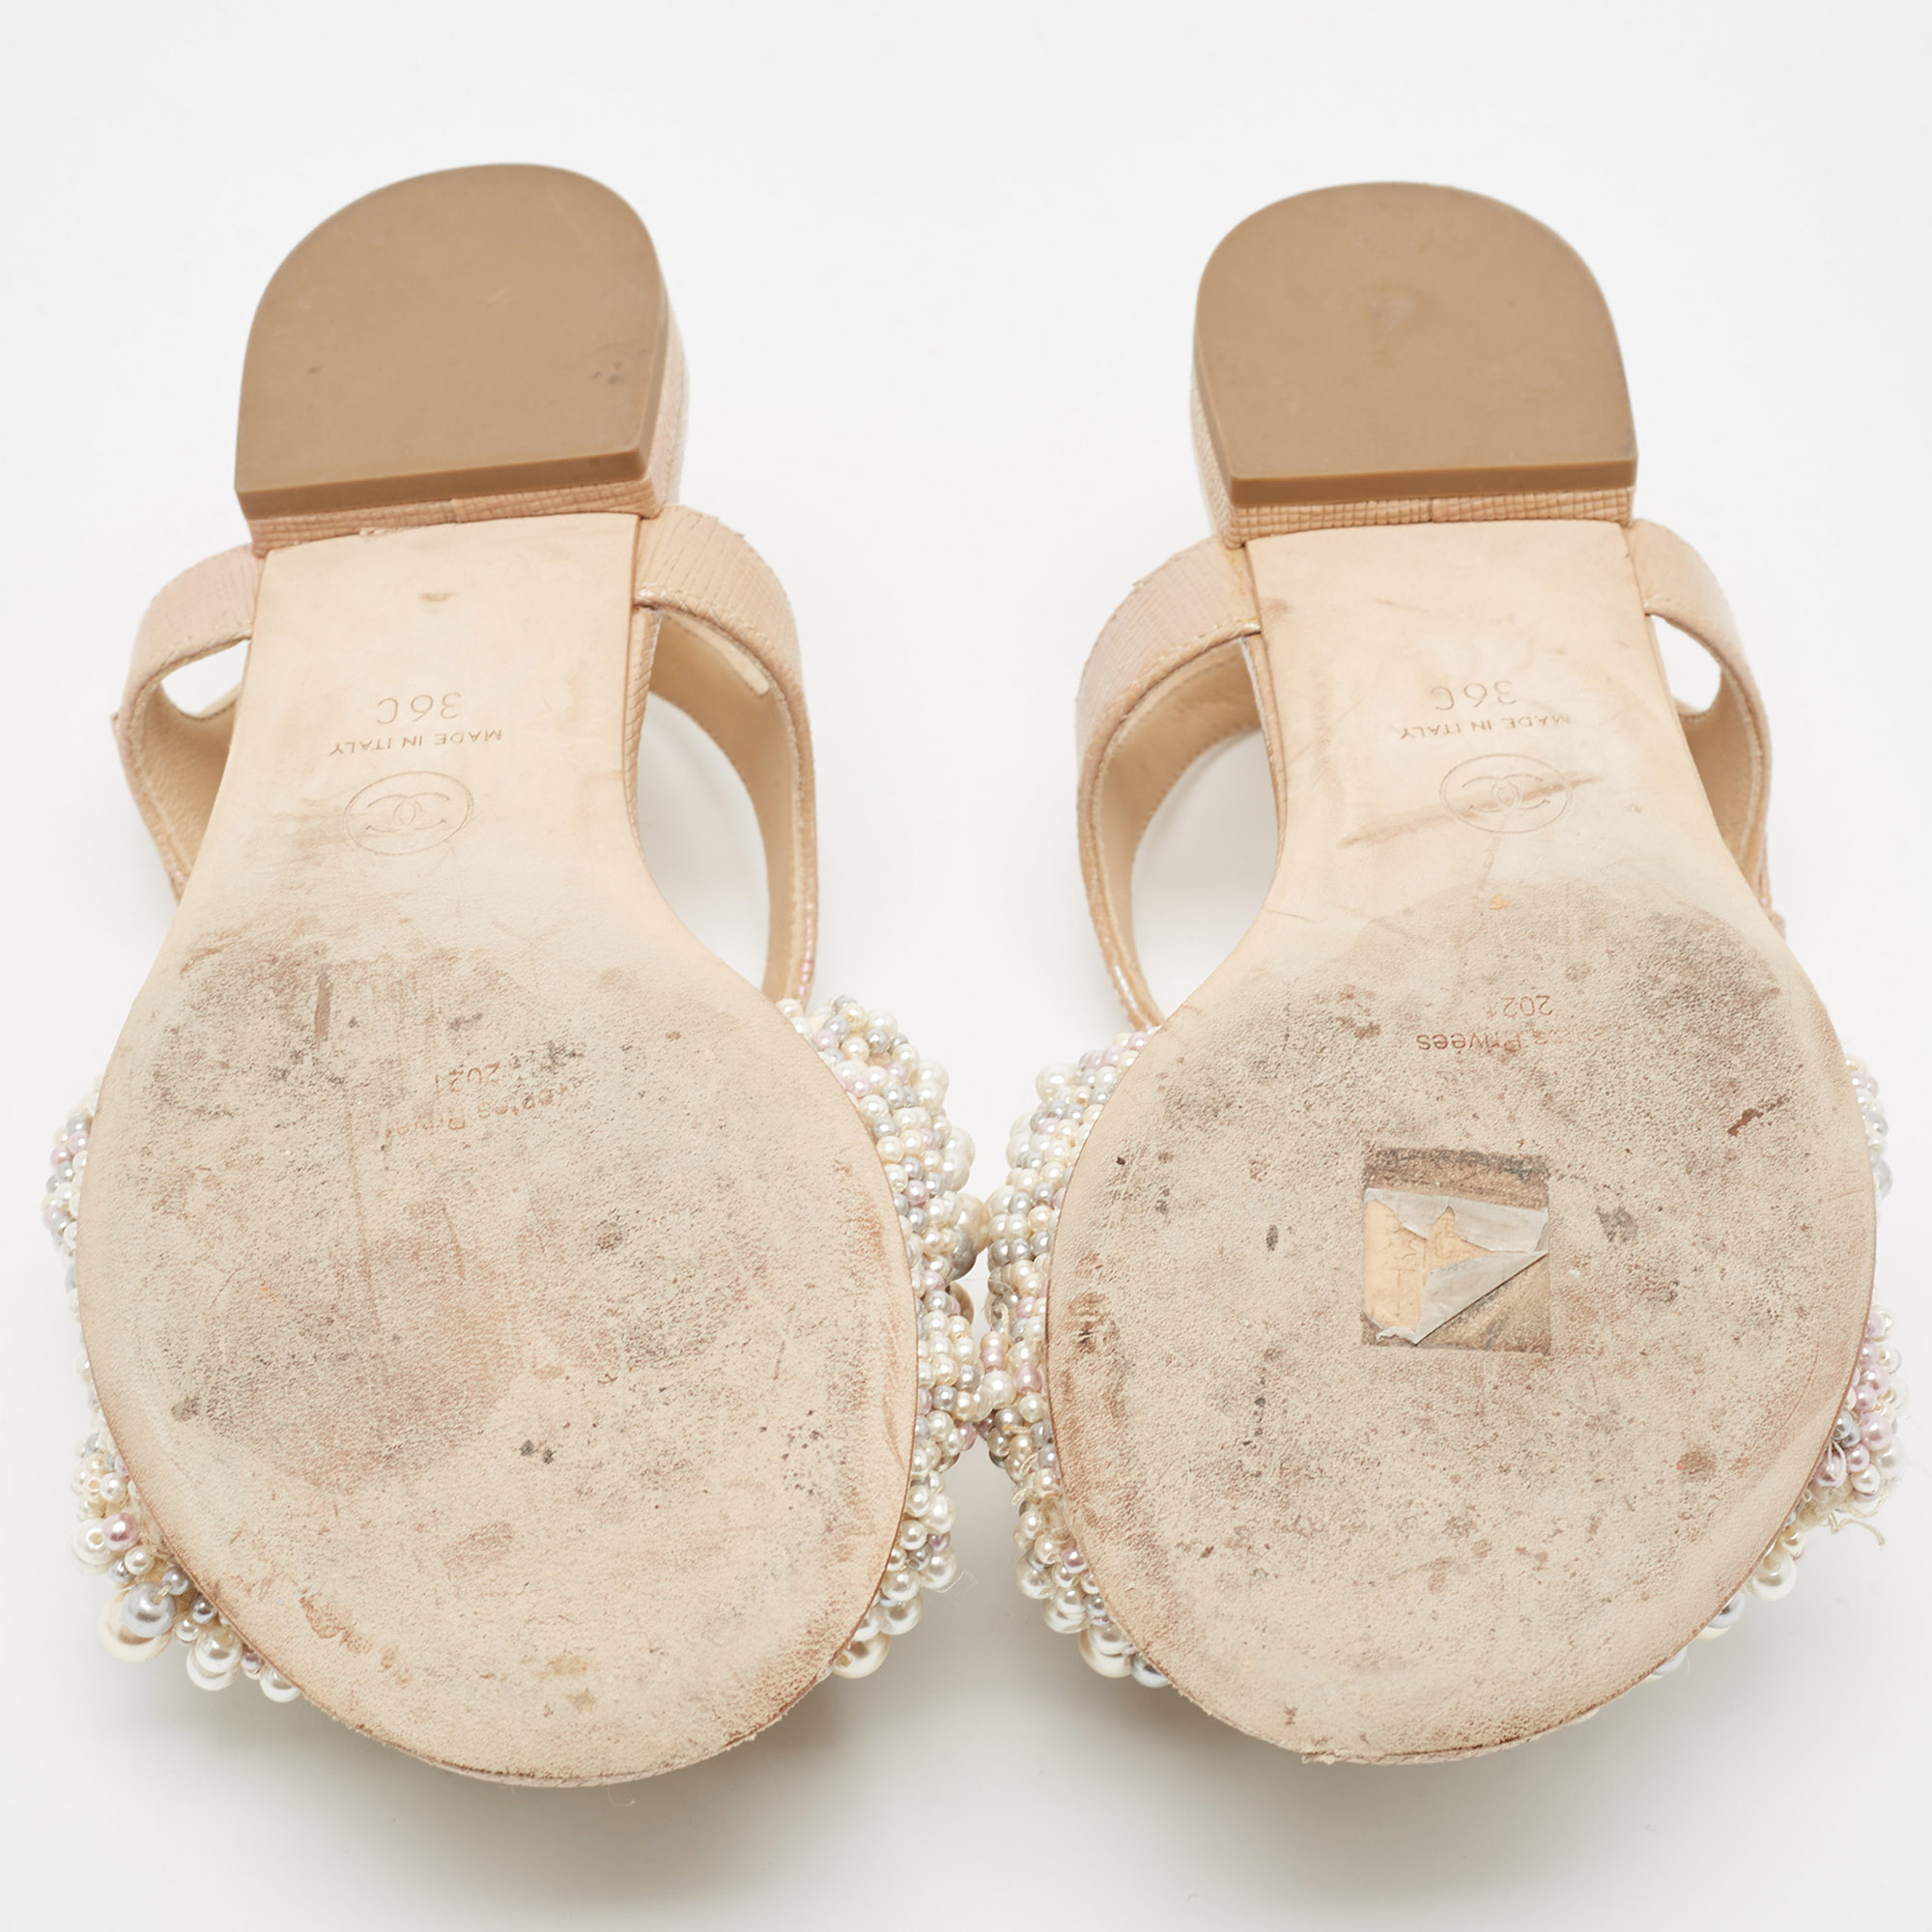 Chanel Beige Faux Pearl Slide Flat Sandals Size 36